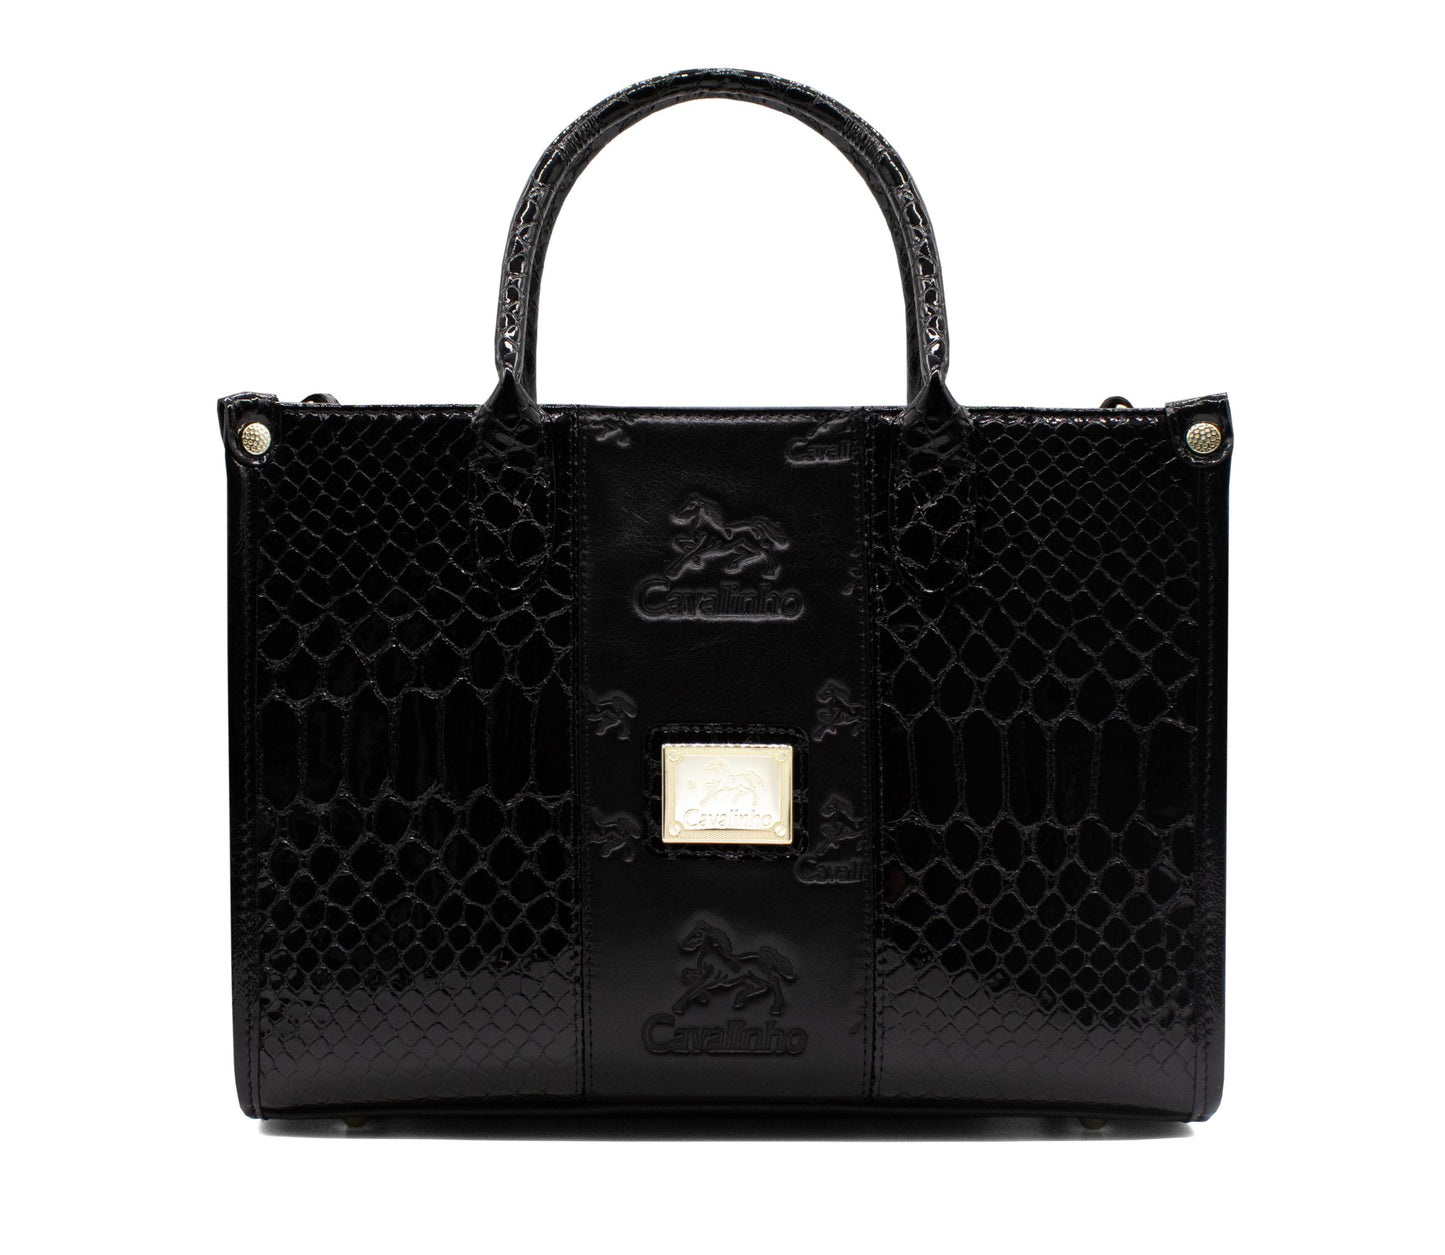 Cavalinho Honor Handbag - Black - 18190423.01_1